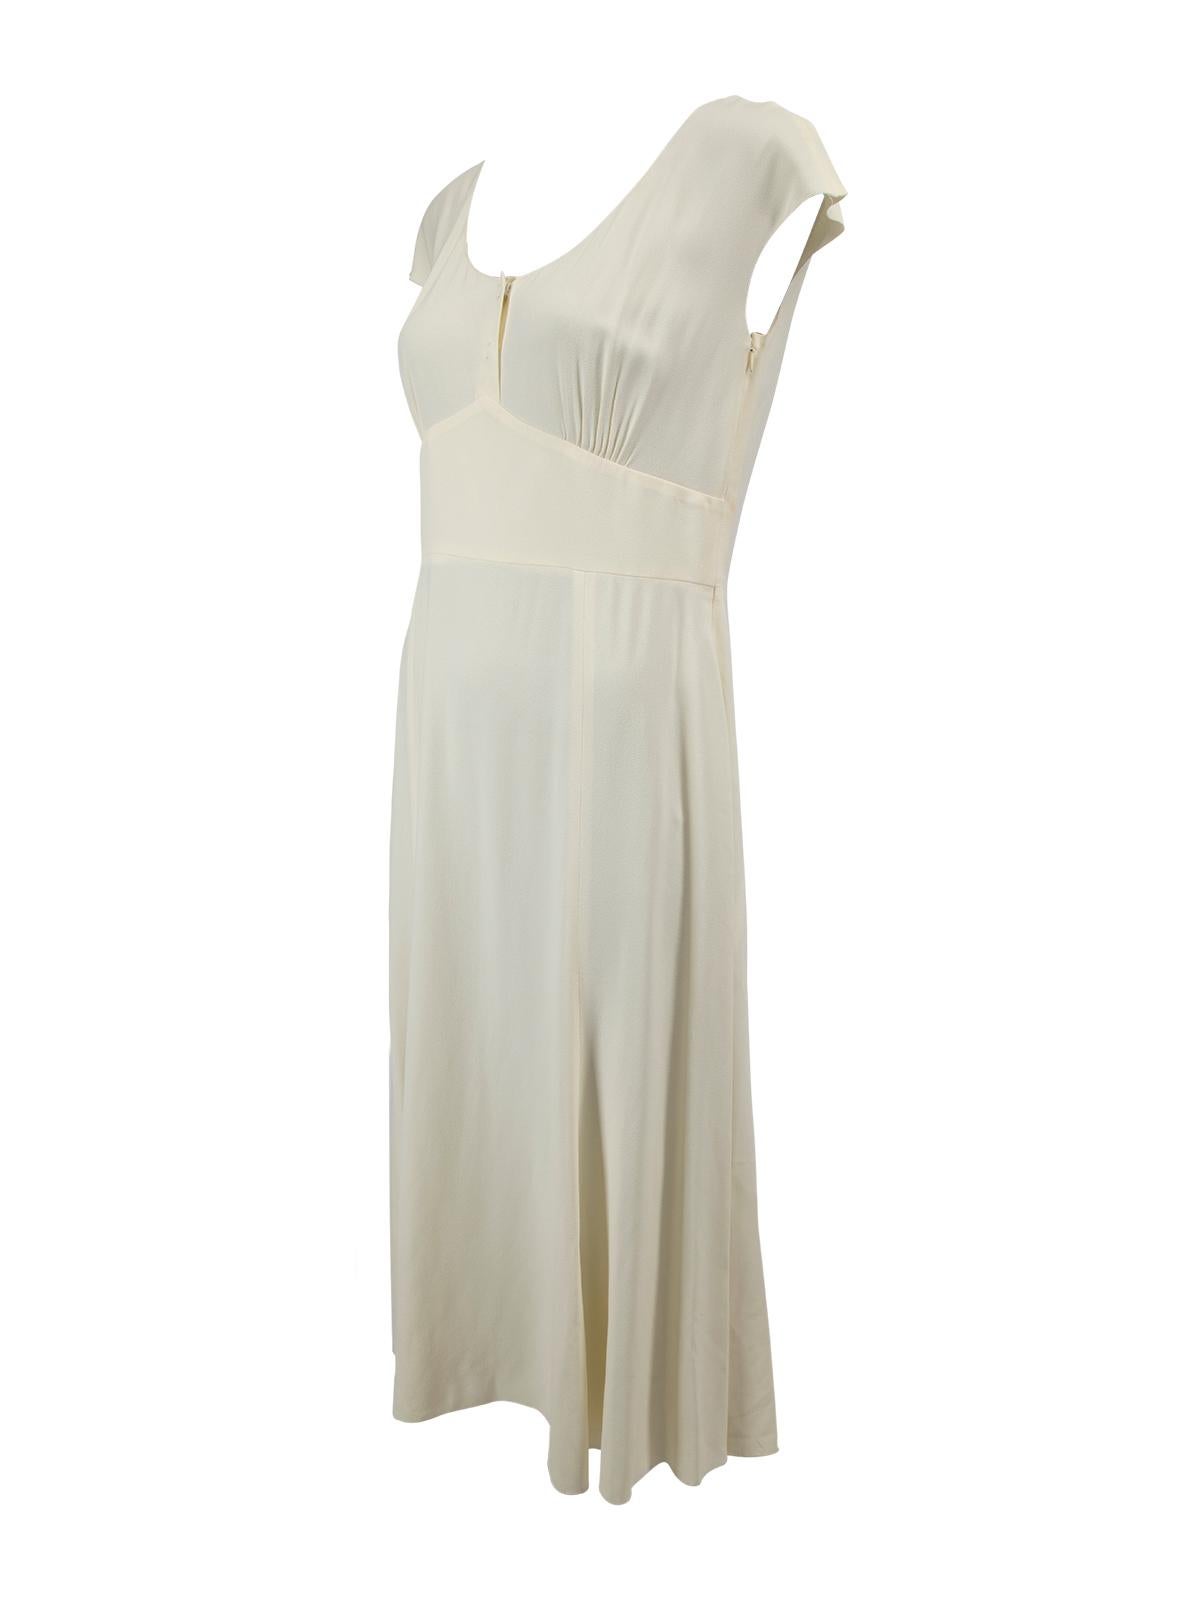 Pre-Loved Prada Women's White Short Sleeve Dress 1